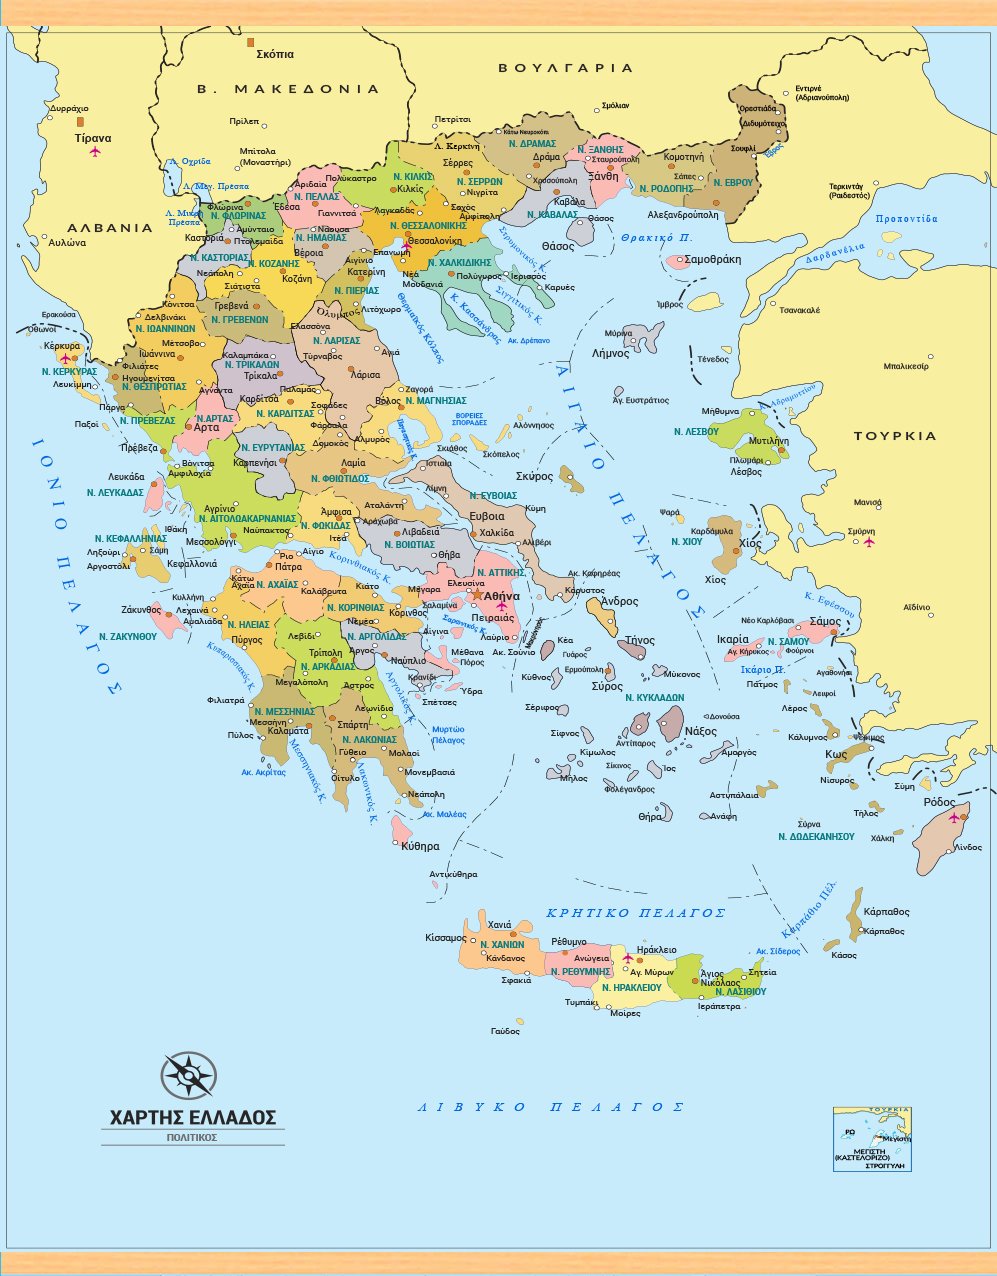 Πολιτικός χάρτης Ελλάδας στα Ελληνικά με νομούς. (ΚΩΔ.GR102m). Νομοί Ελλάδας πρωτεύουσες νομών και μεγαλύτερες πόλεις.